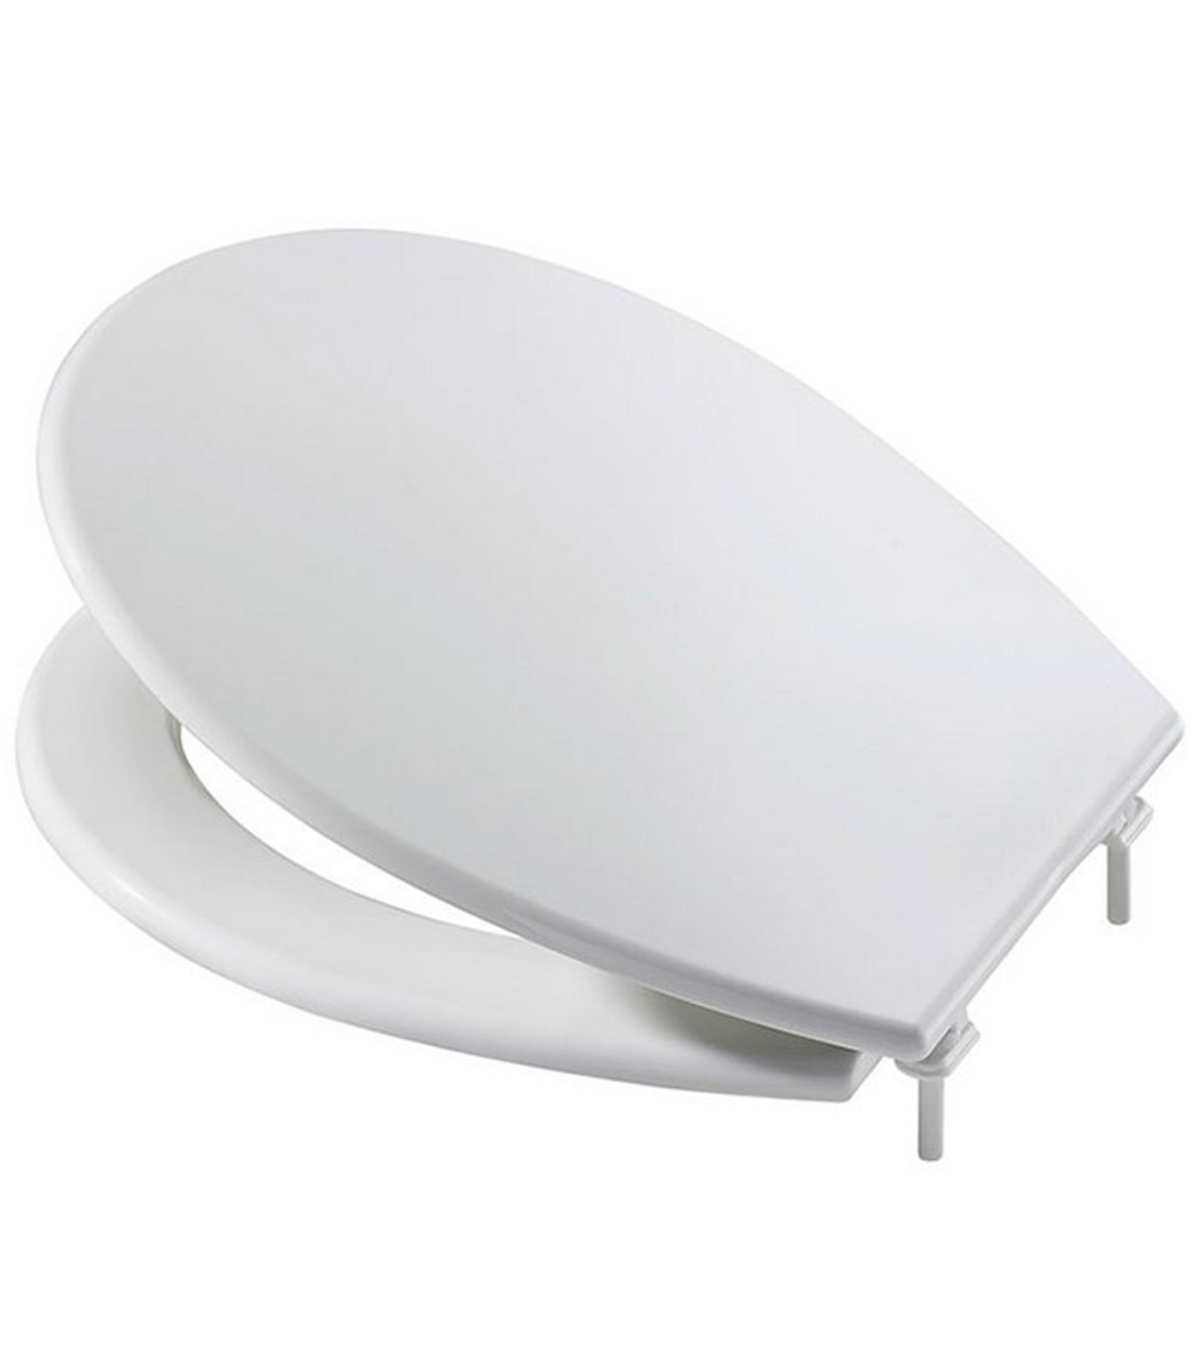 Tradineur - Tapa de WC universal, asiento de polipropileno para inodoro,  bisagras ajustables, montaje rápido, fácil de limpiar (